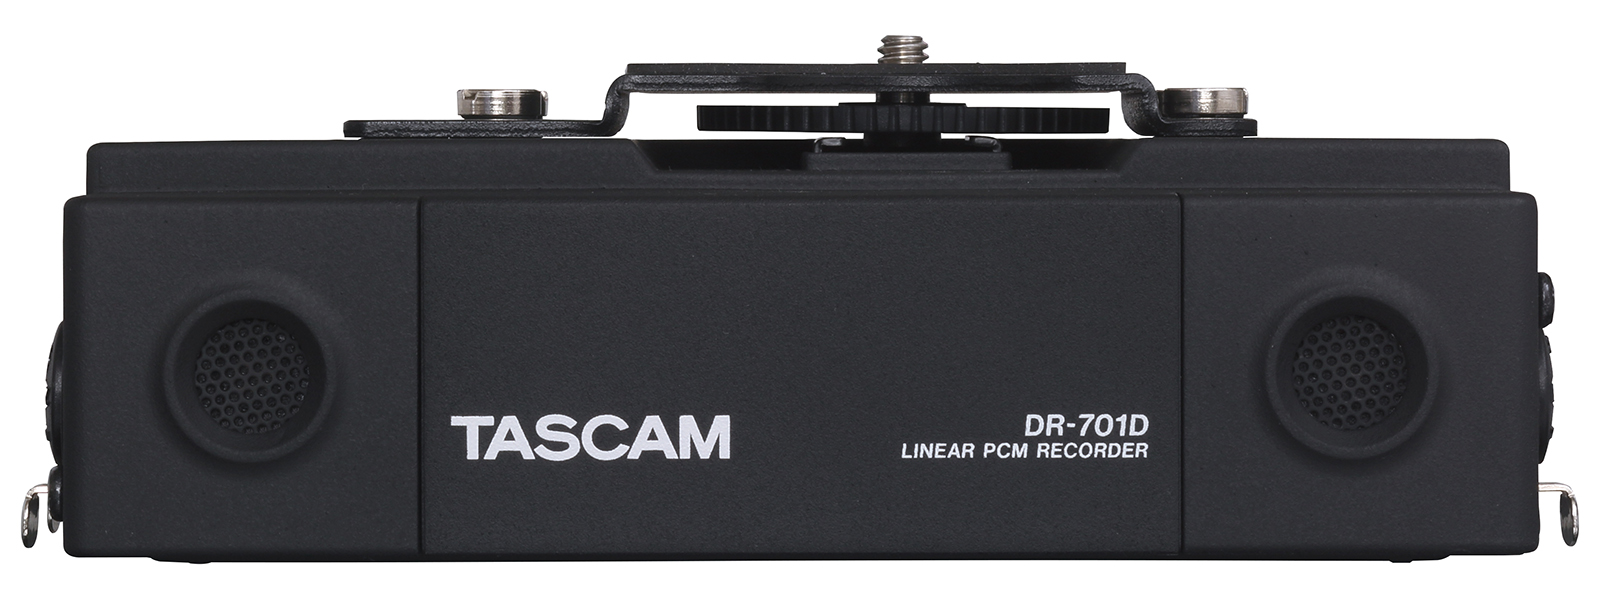 リニアPCMレコーダー / DR-701D, TASCAM